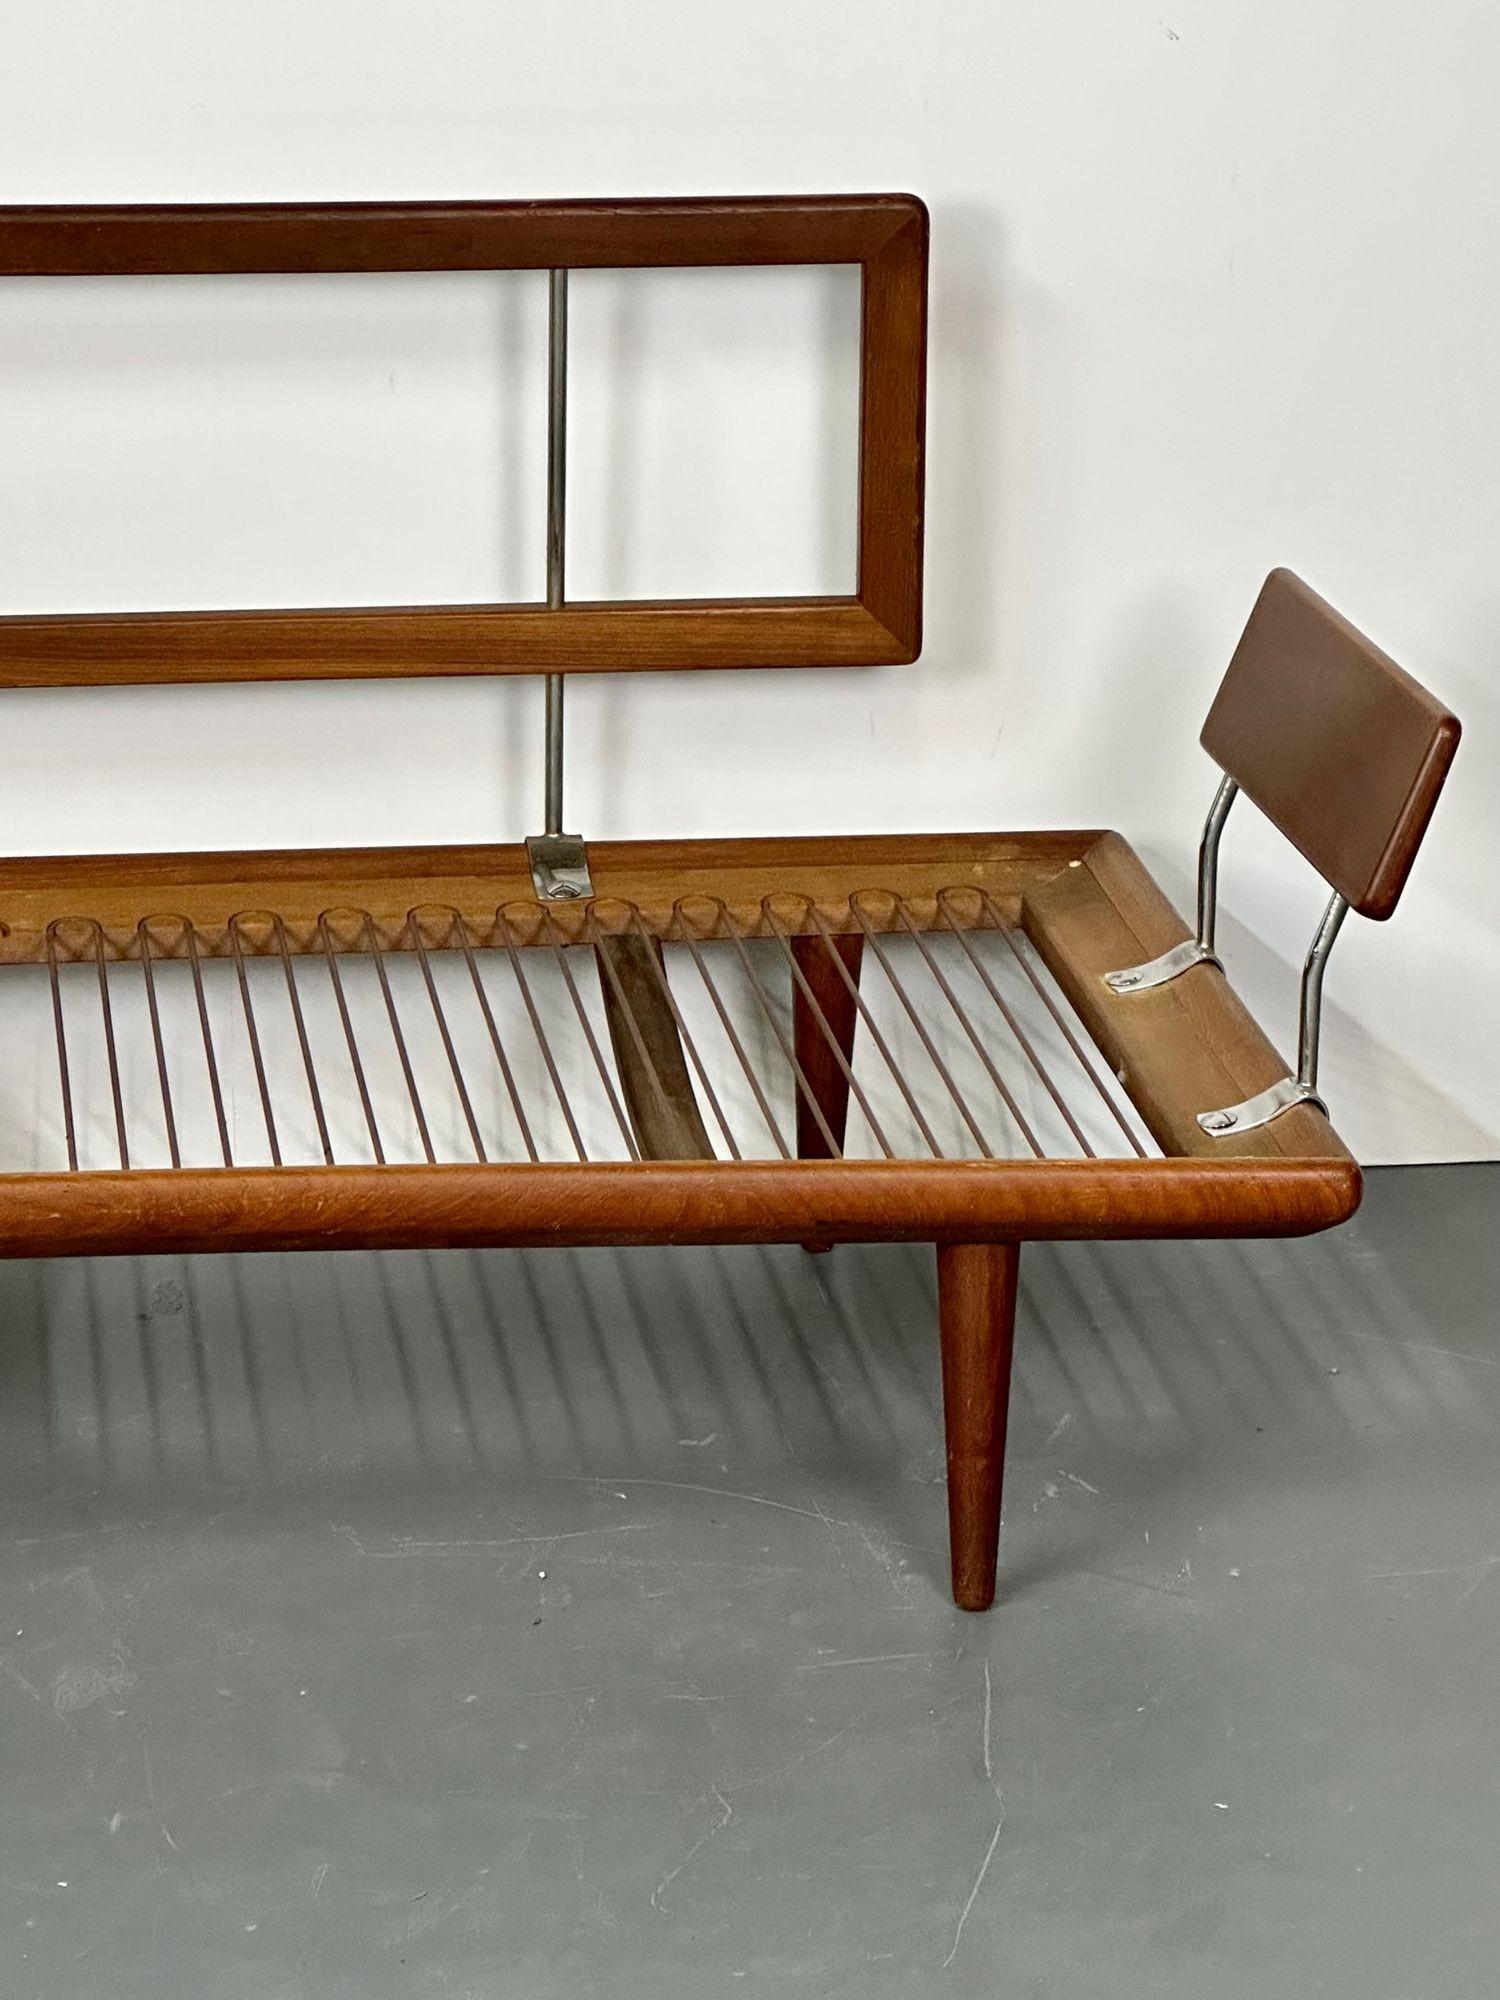 Modernes Mid-Century-Sofa von Peter Hvidt, Orla Molgaard für John Stuart, 1960er Jahre (amerikanisch)